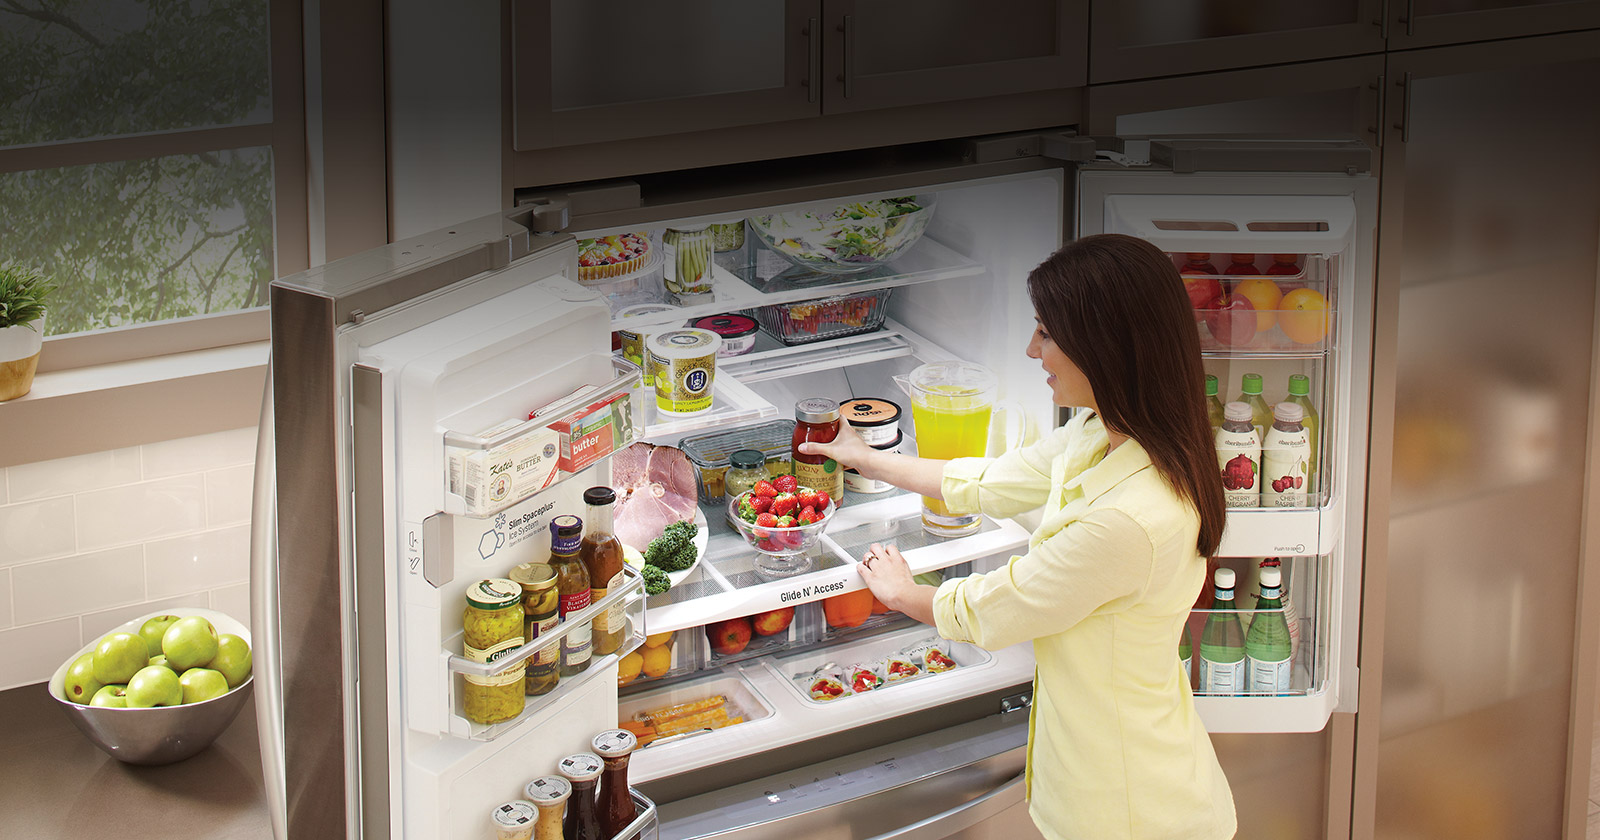 Tu līdz šim produktus ledusskapī esi uzglabājis nepareizi – lūk, kā tas jādara!